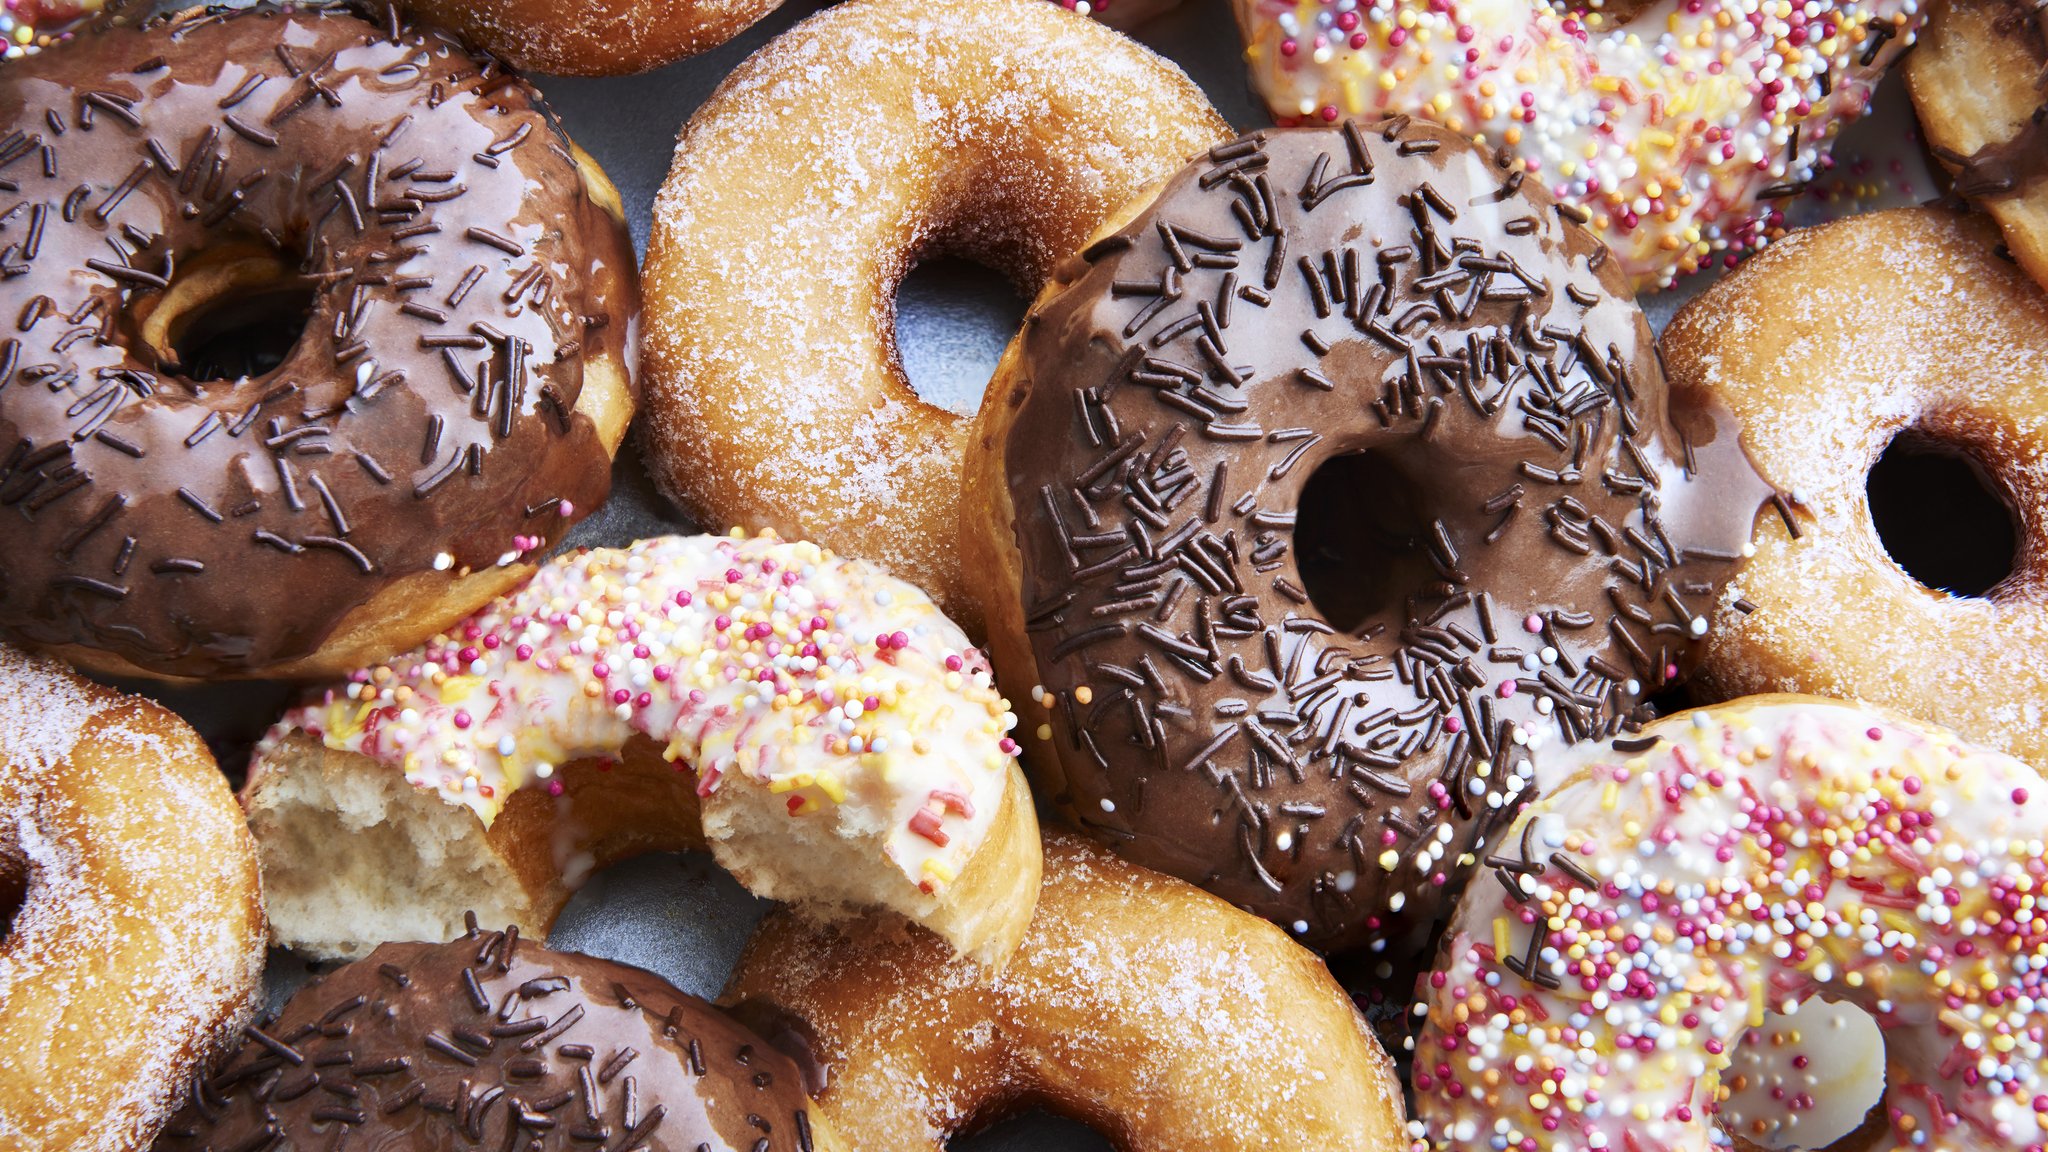 Quem gosta e acham esses donuts fofinhos deixa nos comentários